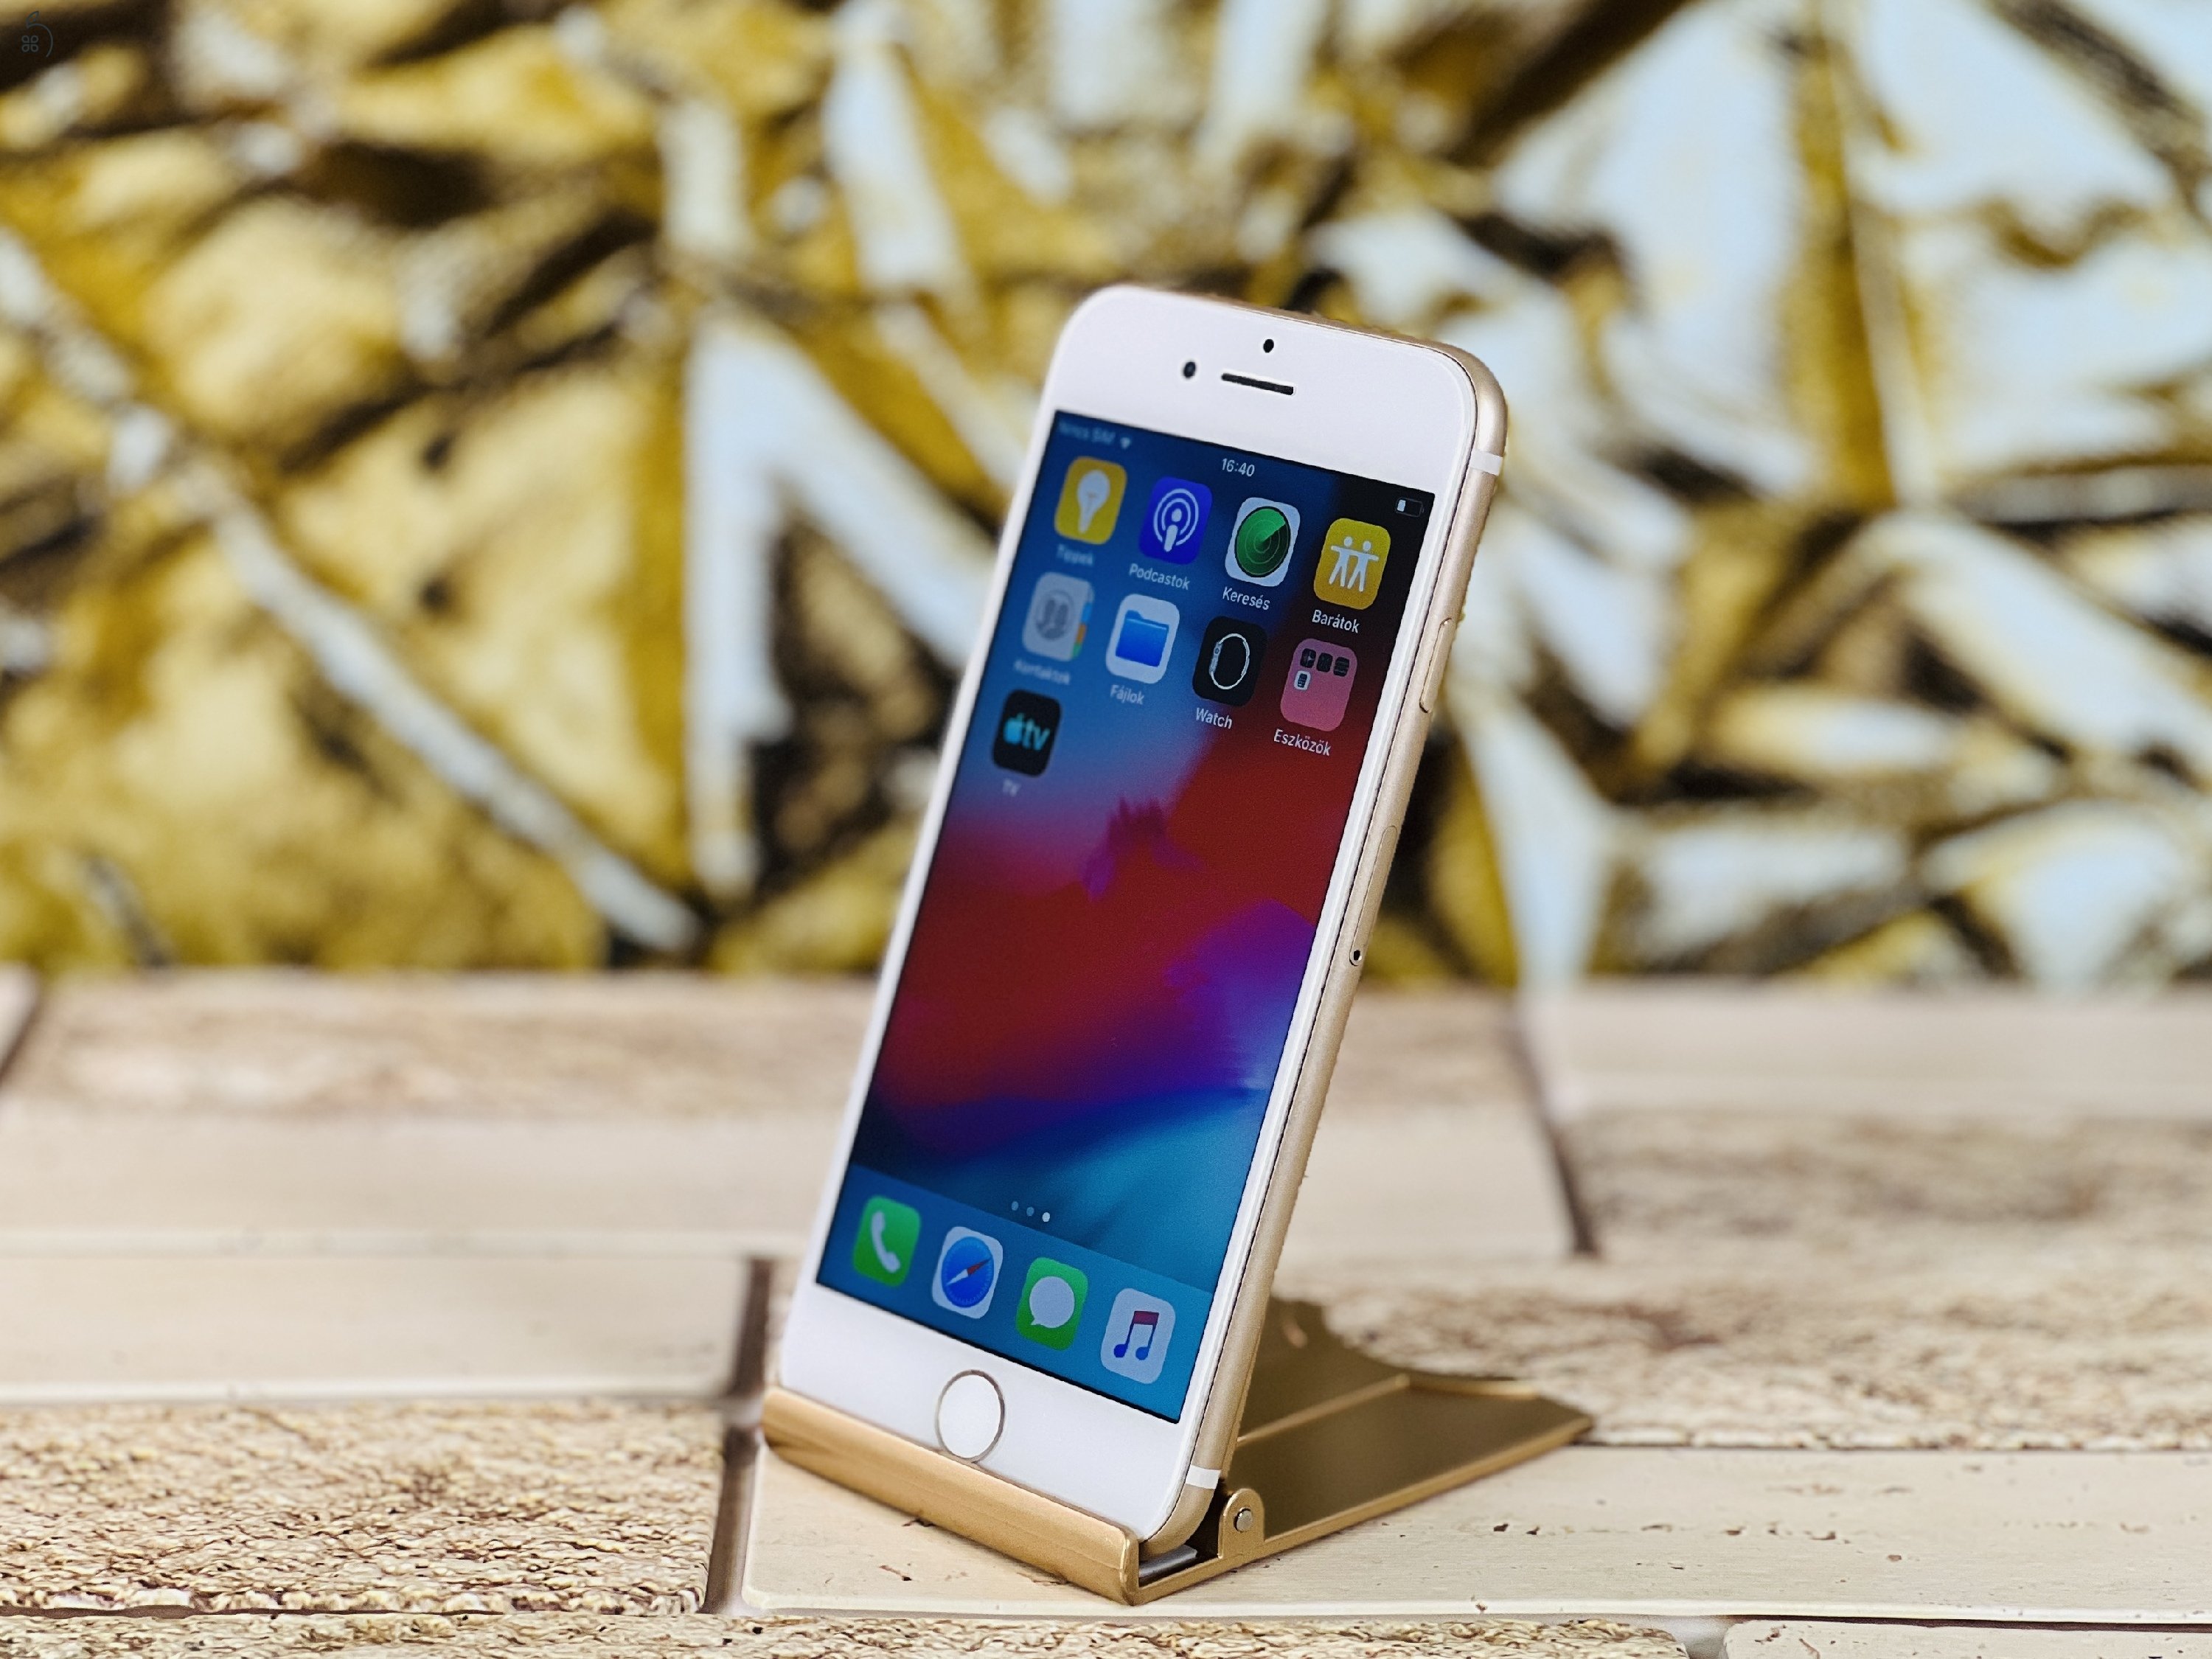 Eladó iPhone 7 32 GB Gold 100% aksi szép állapotú - 12 HÓ GARANCIA - R7881